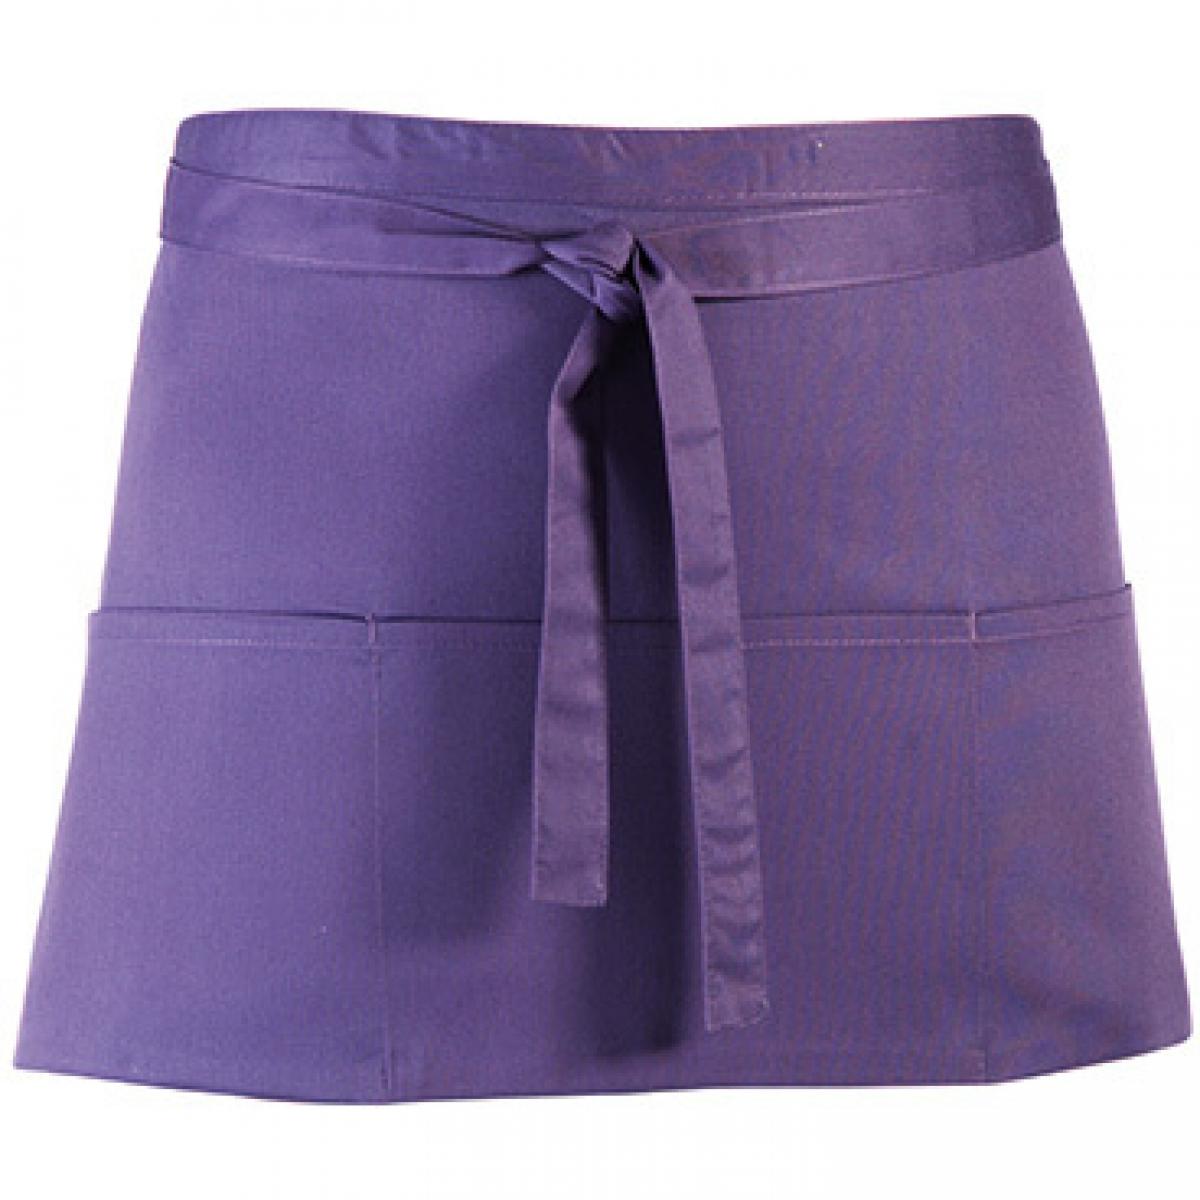 Hersteller: Premier Workwear Herstellernummer: PR155 Artikelbezeichnung: Taschenschürze ´Colours´ - 60 x 33 cm - Hauswäsche: bis 60 ° Farbe: Purple (ca. Pantone 269)